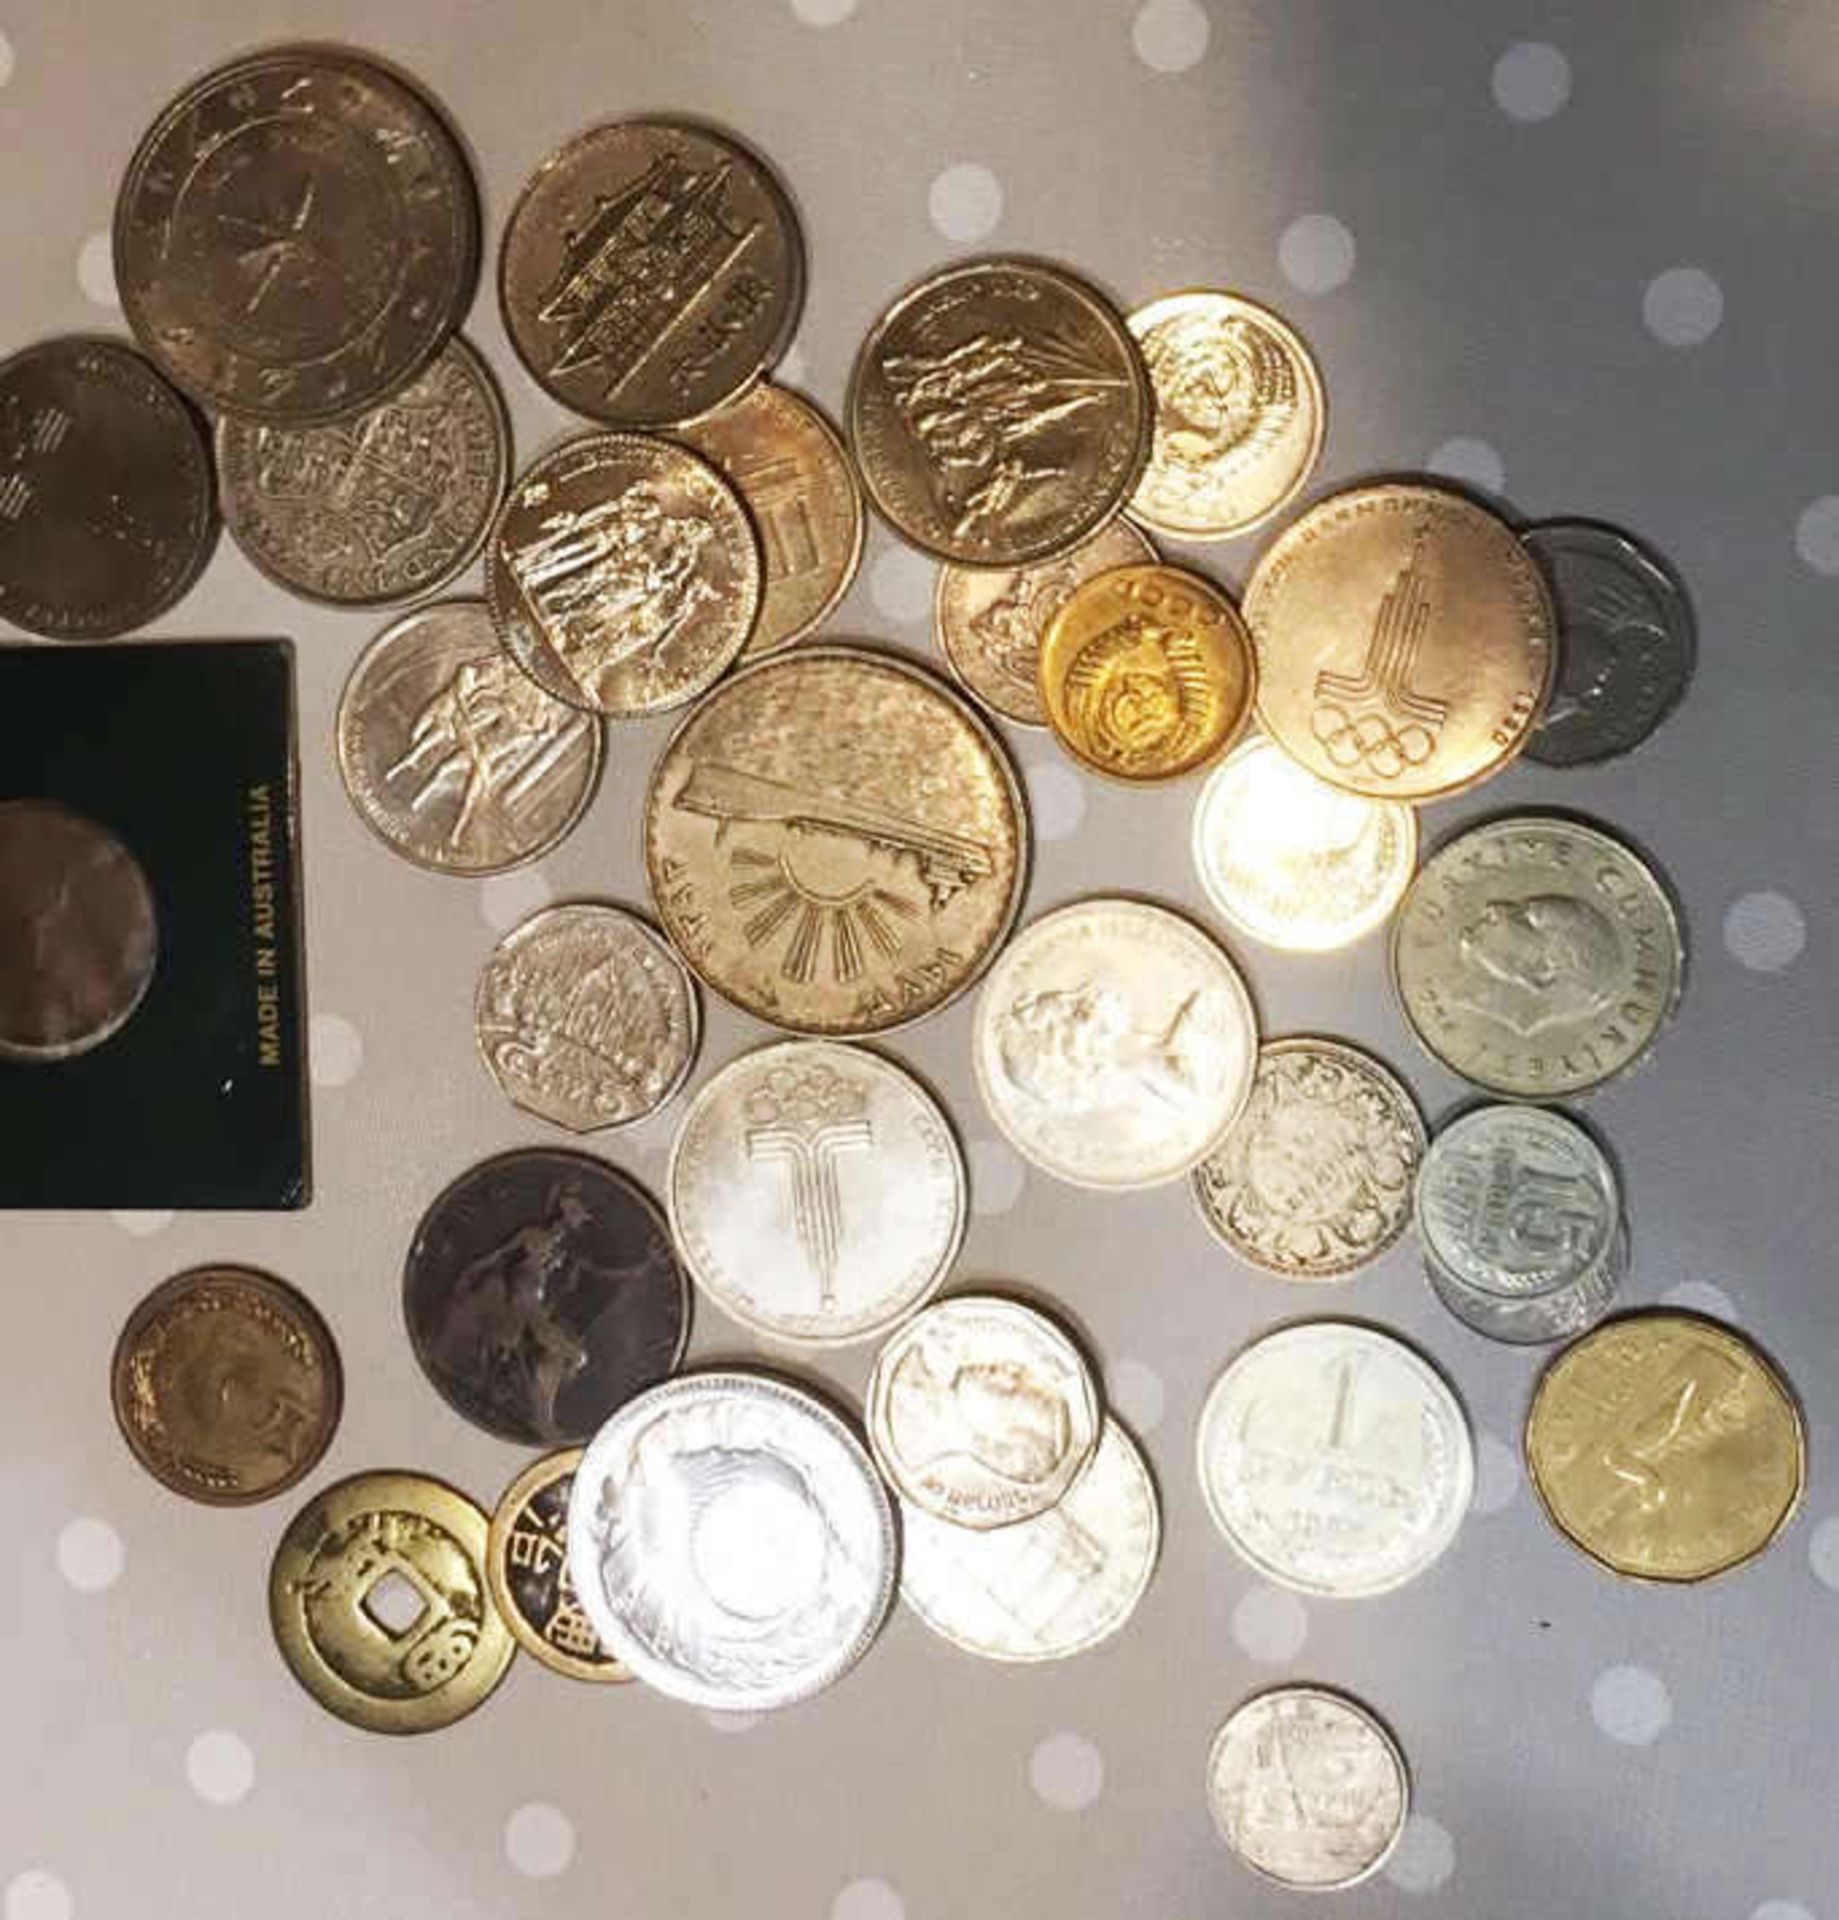 Münz und Medaillen - Fundus, teilweise Silber. Dabei Ägypten, China und weiter Staaten. Bitte